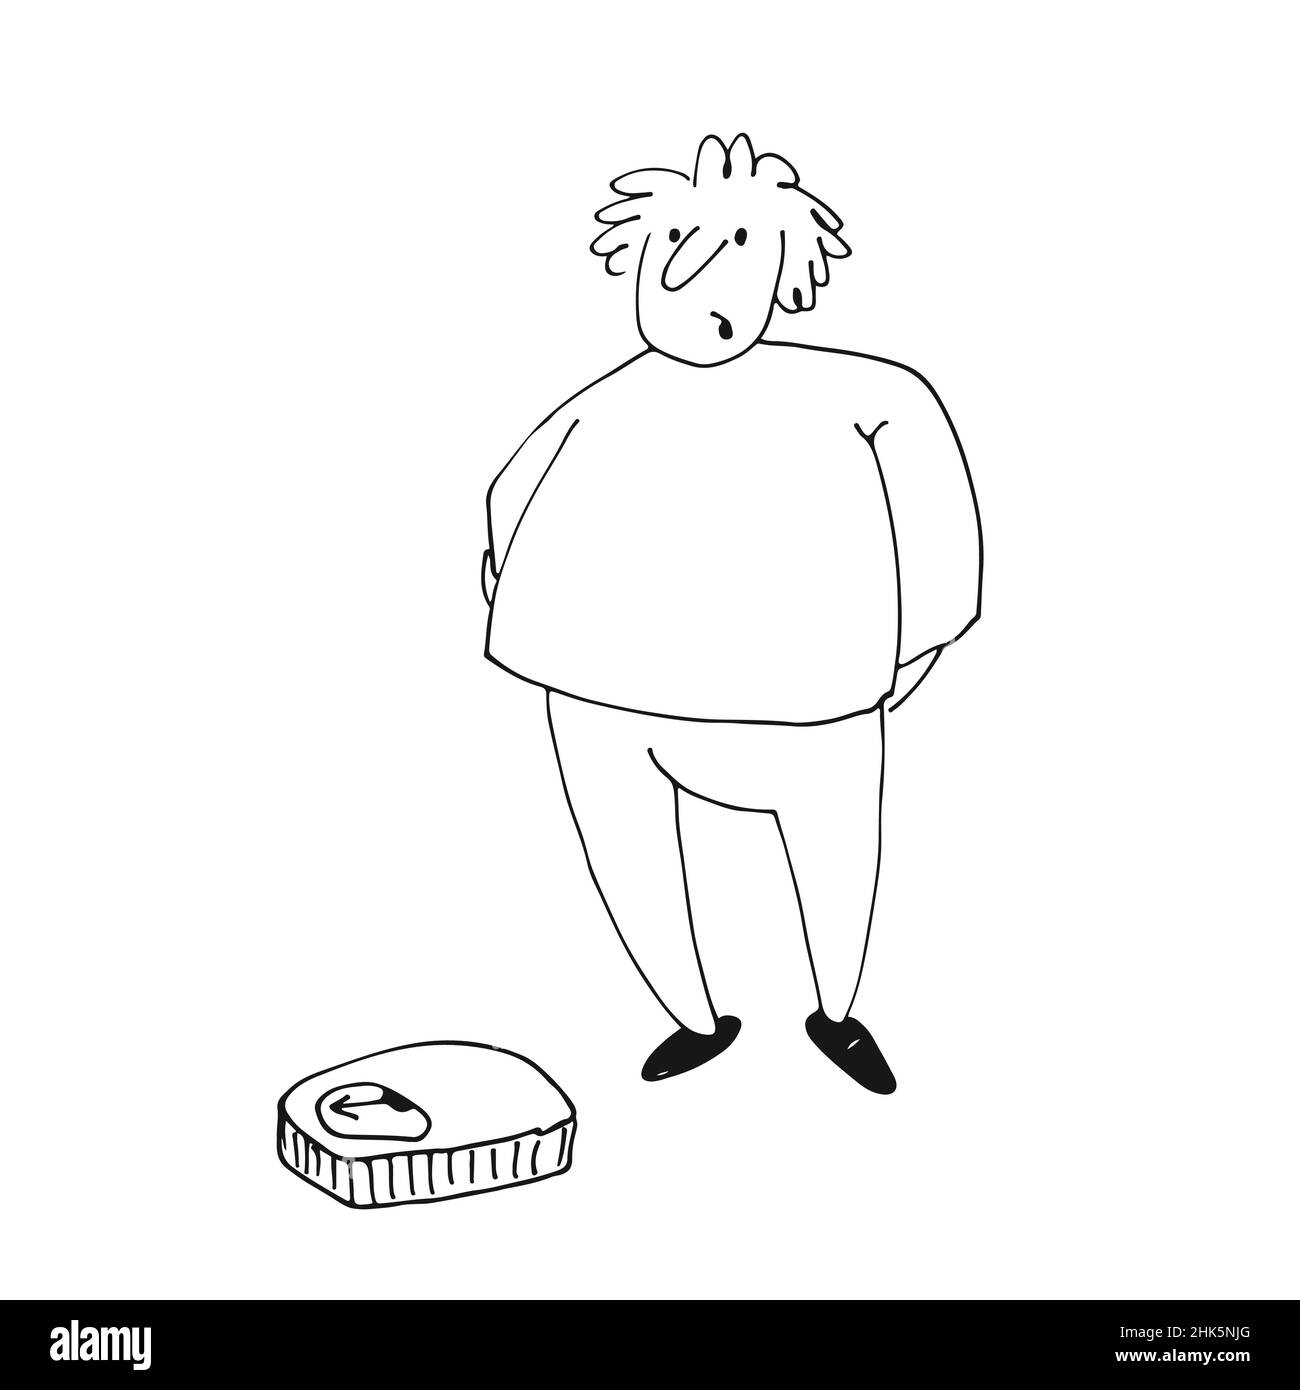 Un hombre gordo mira las escalas, un carácter gracioso, ilustración vectorial dibujada a mano aislada sobre un fondo blanco Ilustración del Vector